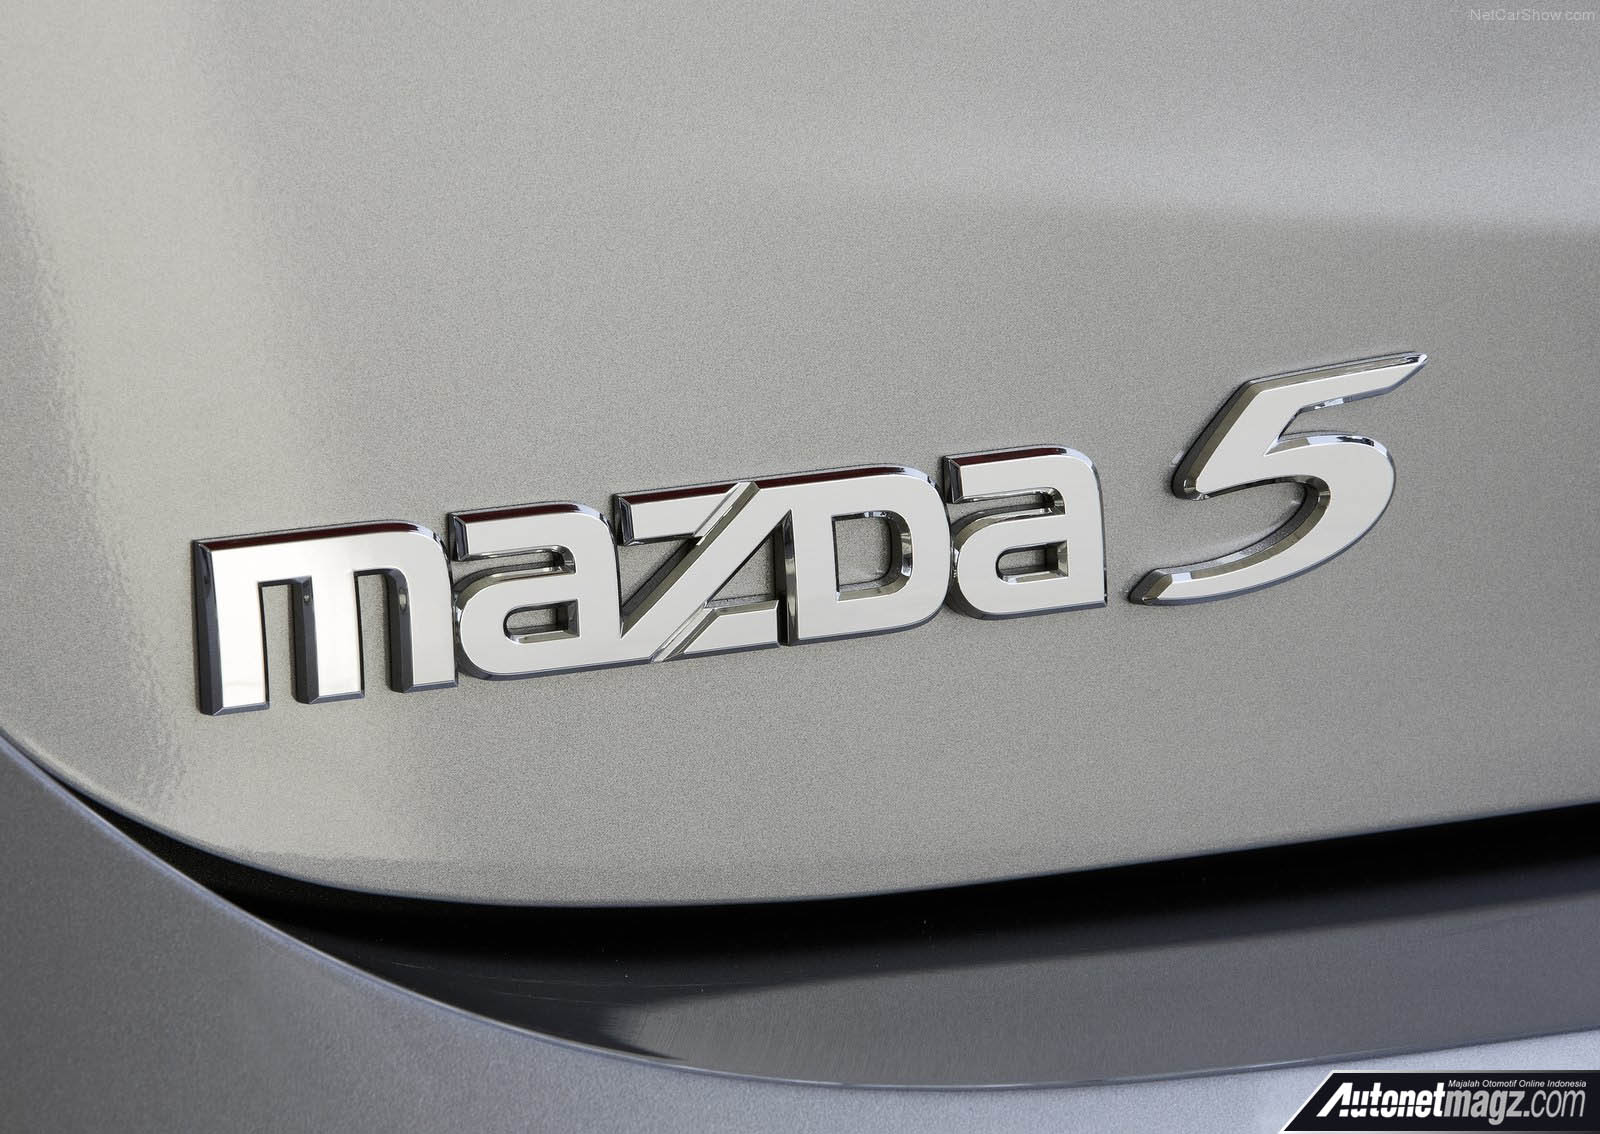 Berita, New Mazda 5 emblem: Nasib Mazda 5 Saat Ini, Hanya Sekedar Ada?